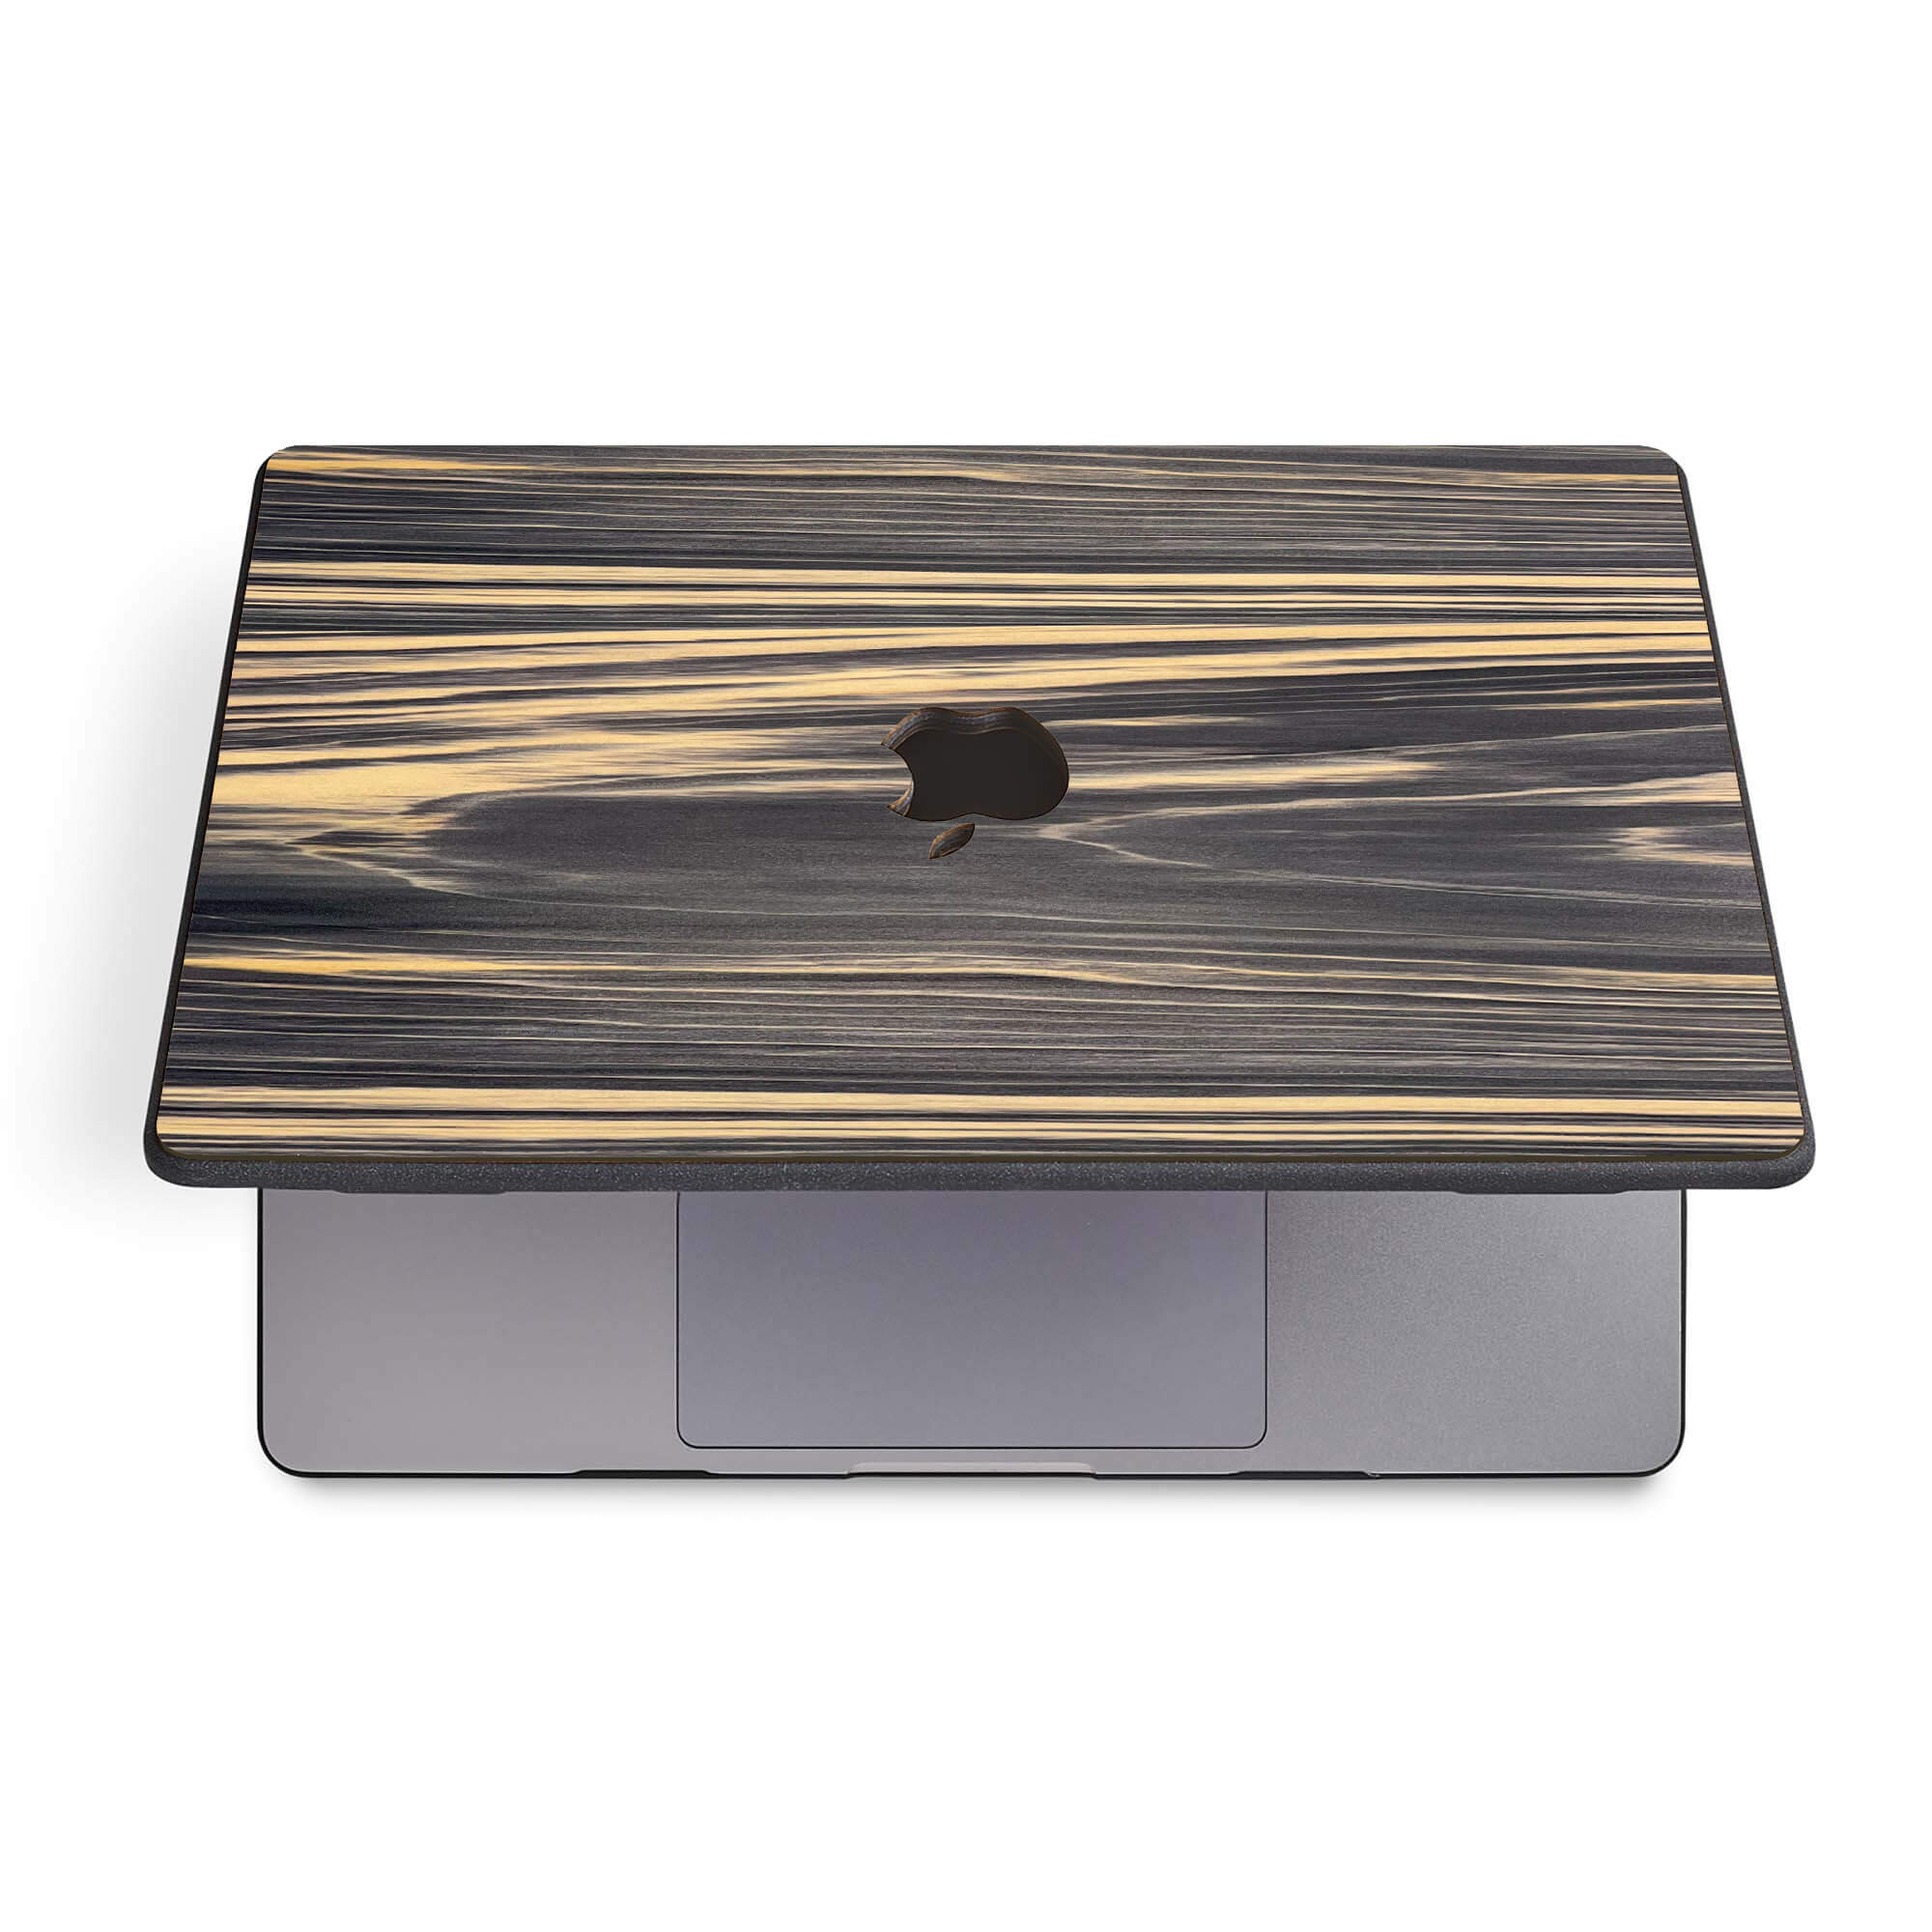 alt:MacBook Irodori Dyed Wood Case | IRO-BKJ-CA-Pro16M1, IRO-BKJ-CA-Pro14, IRO-BKJ-CA-Air13M2, IRO-BKJ-CA-Air15